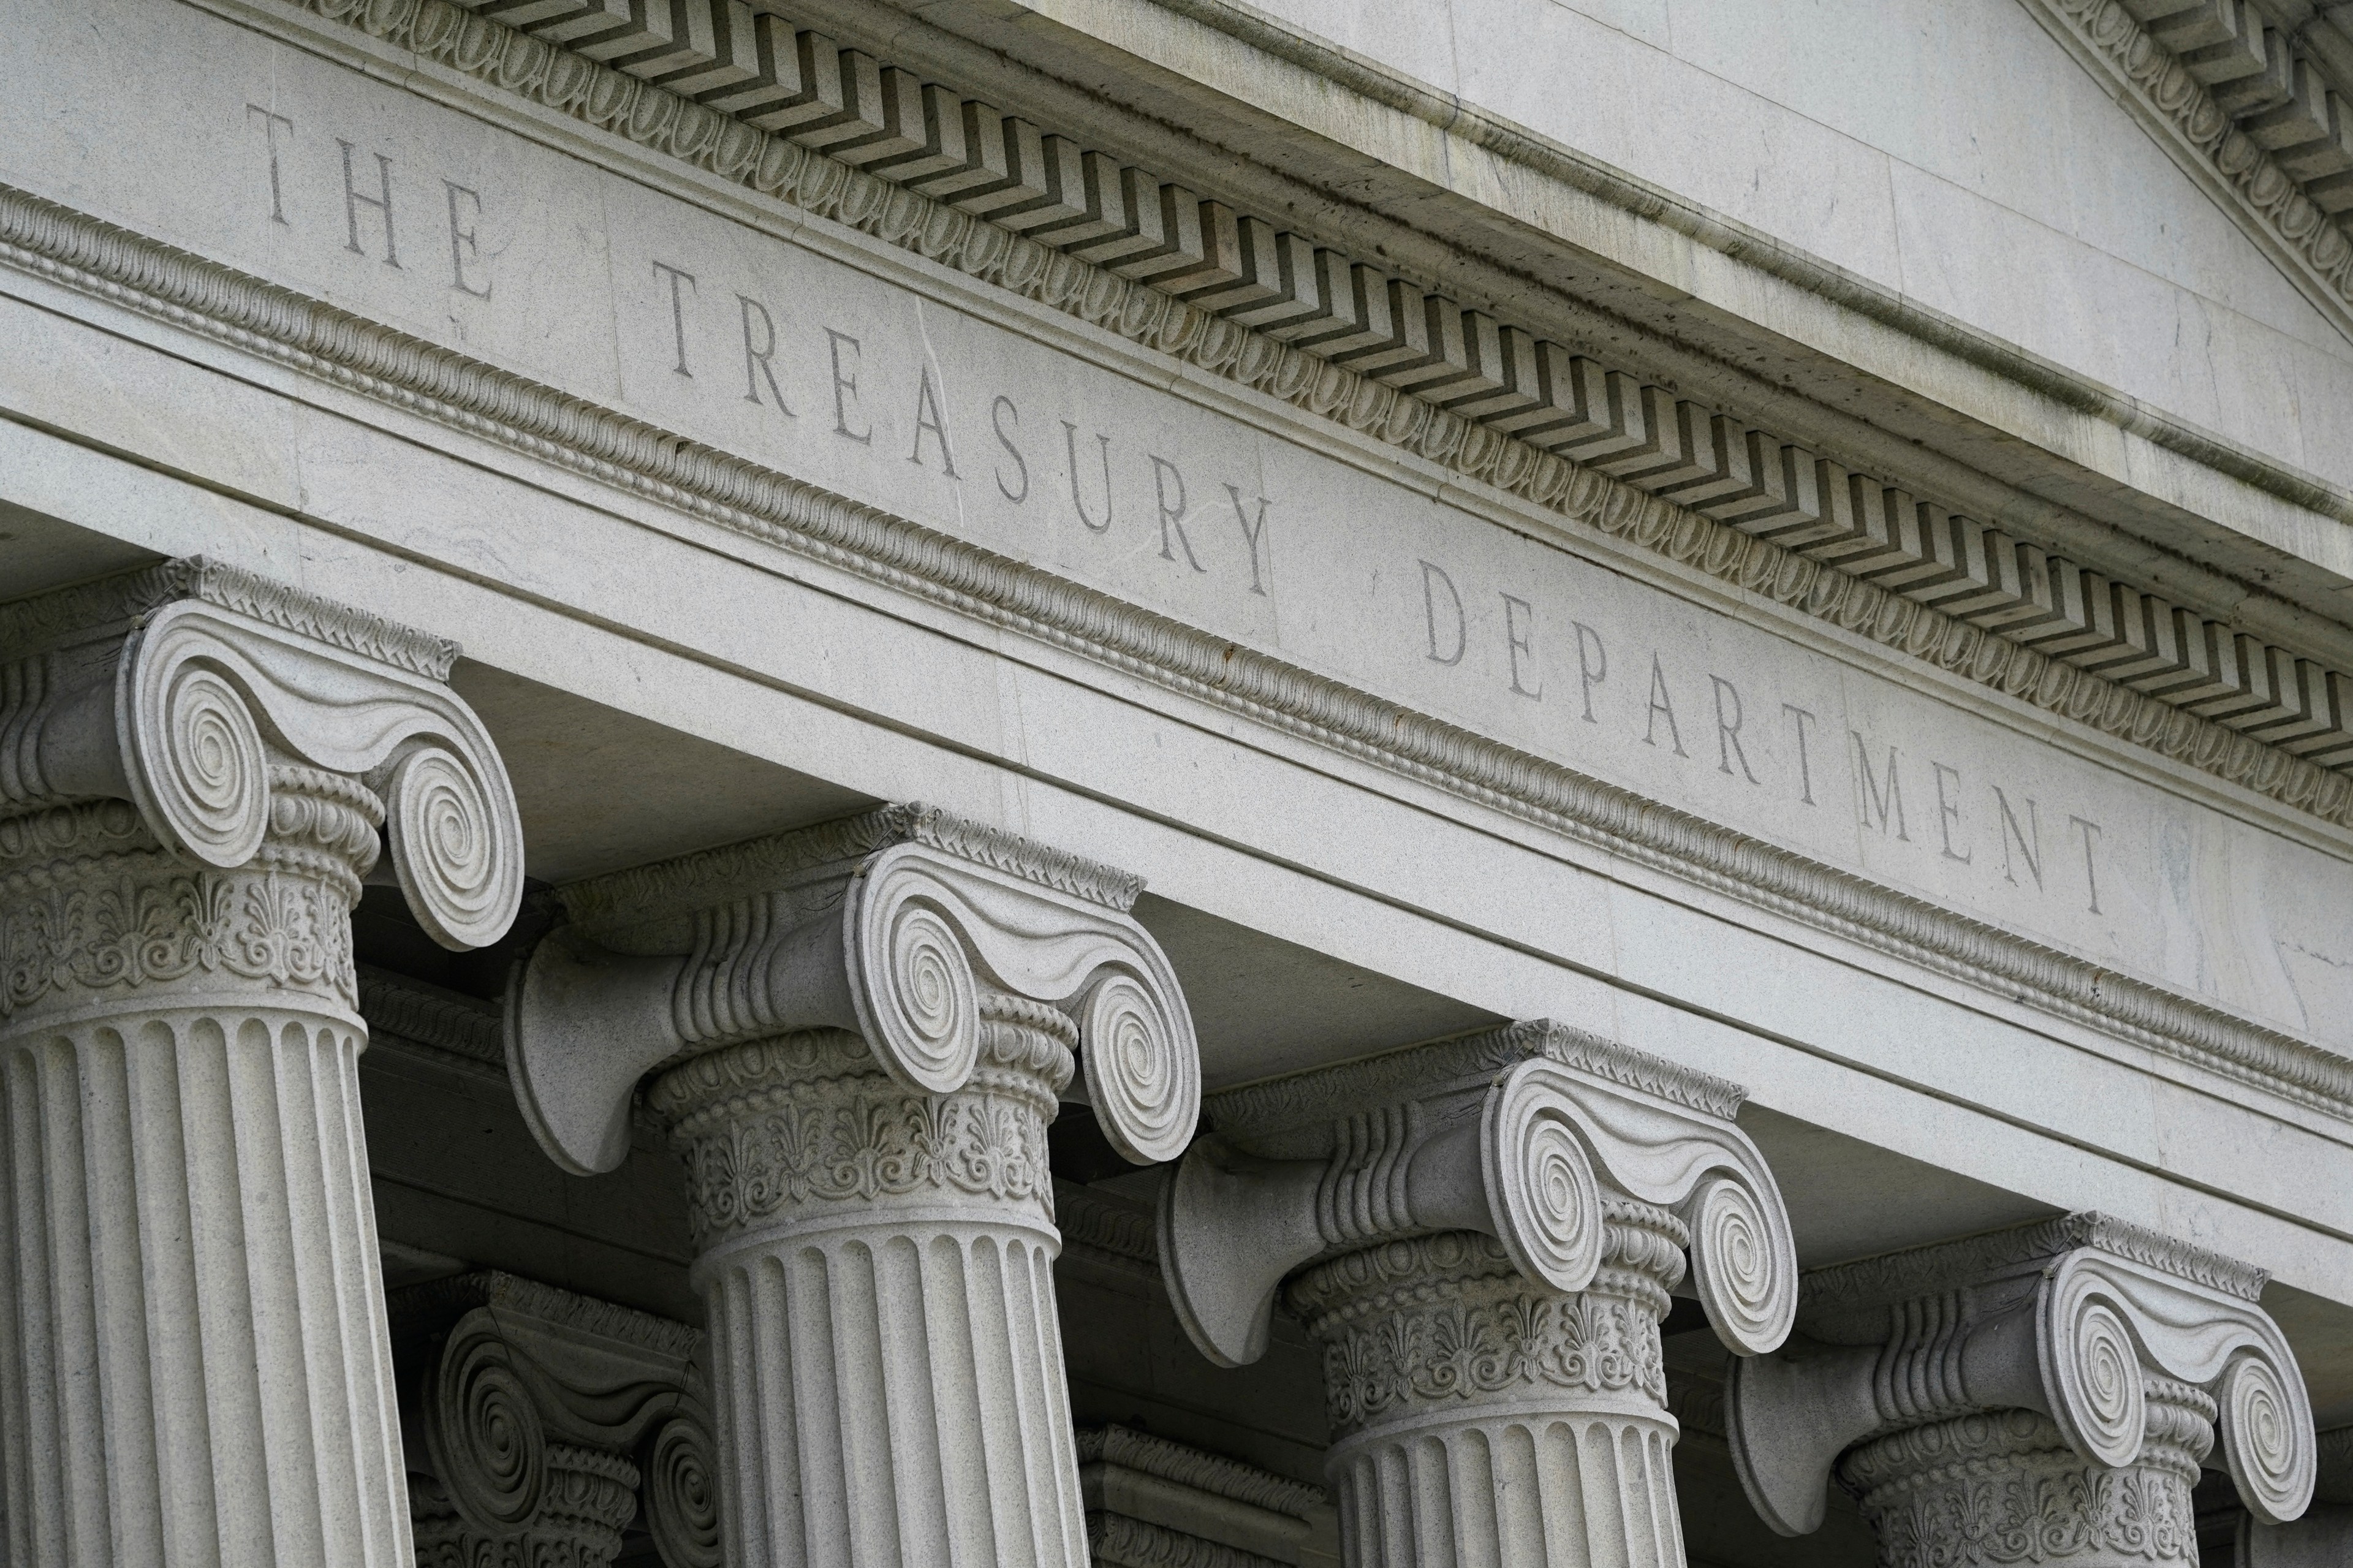 Facade of the U.S. Treasury Department building.